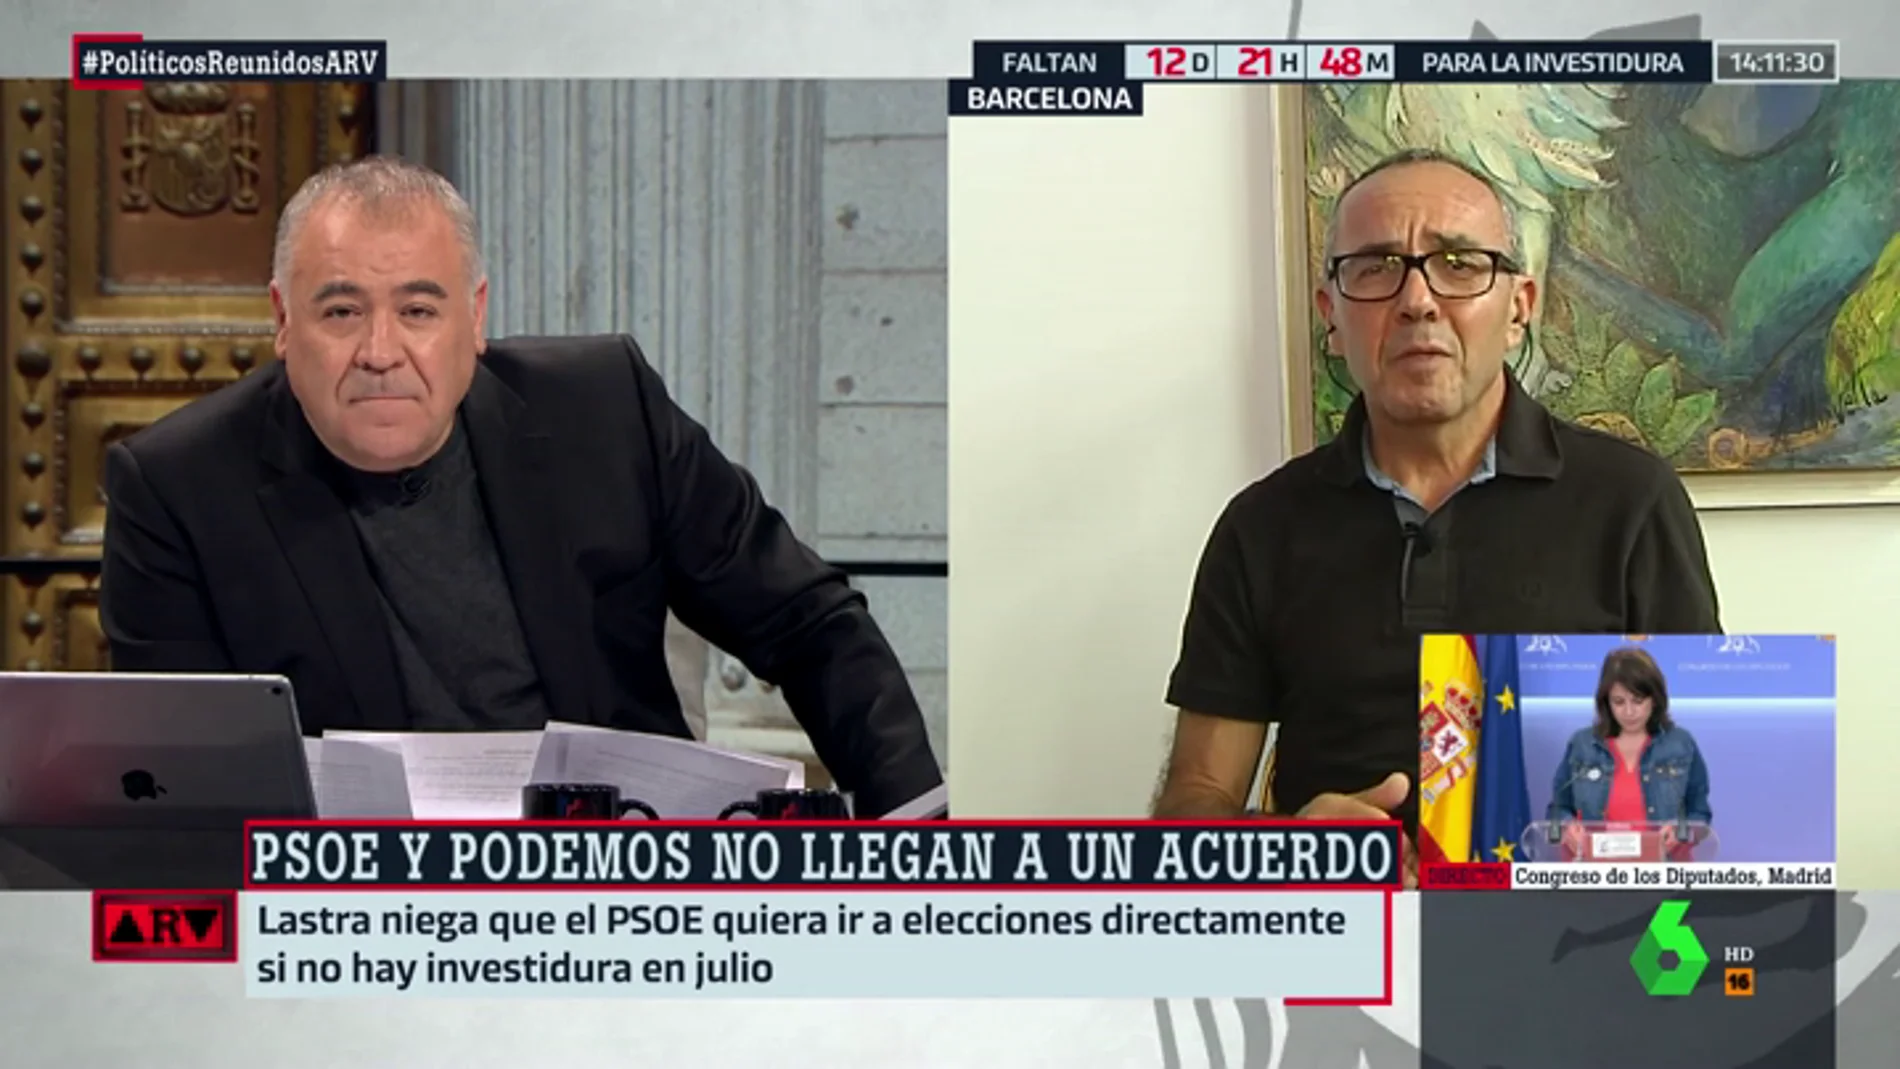  Joan Coscubiela, sobre las negociaciones entre Sánchez e Iglesias: "Cuando un acuerdo termina con alguien derrotado, termina mal"